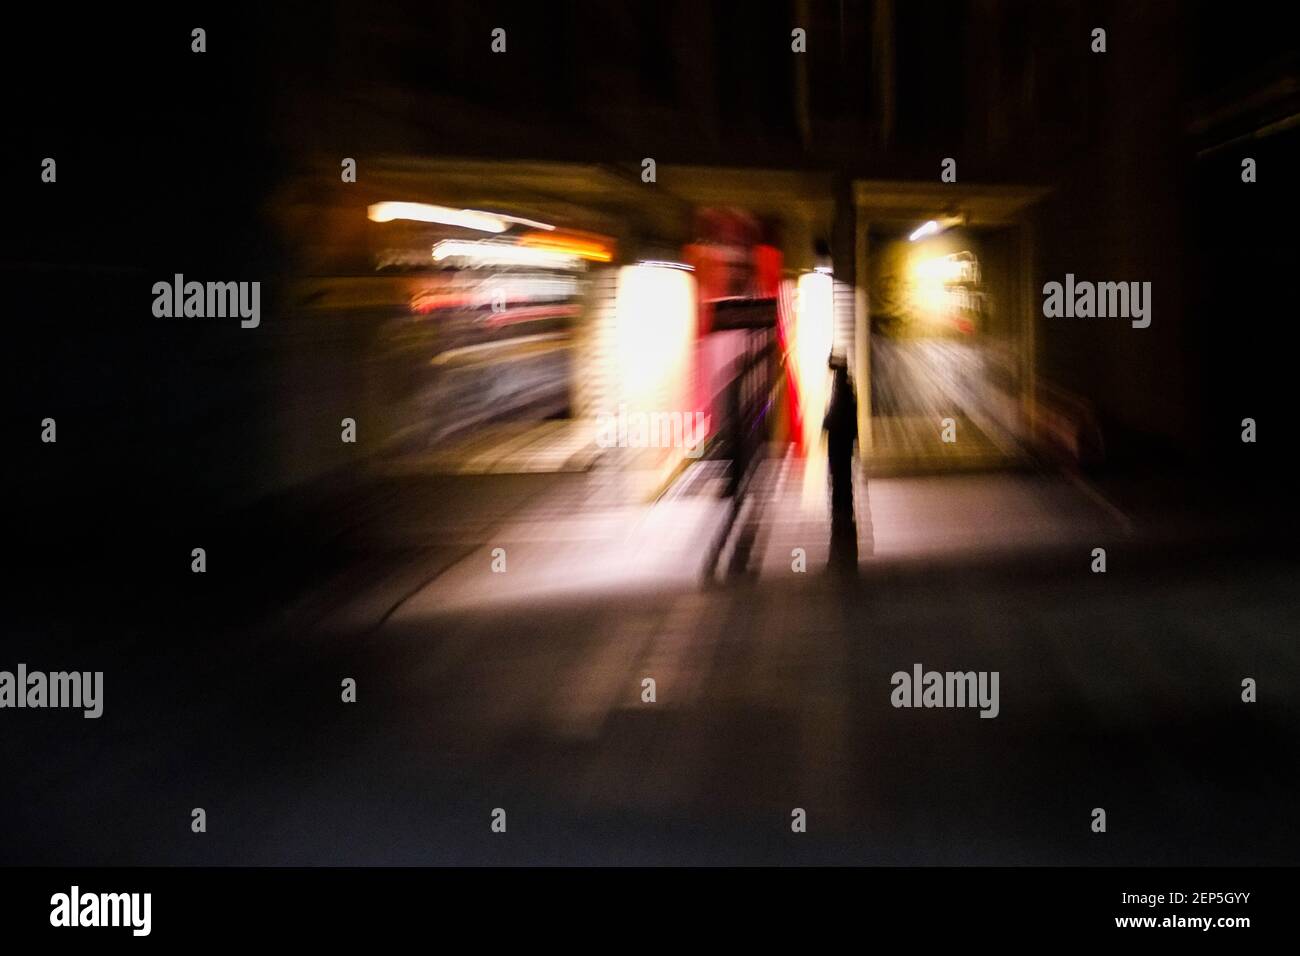 L'objectif zoom ajoute de l'action à la scène nocturne de moody Outdoor City, Montpelier, VT, États-Unis. Banque D'Images